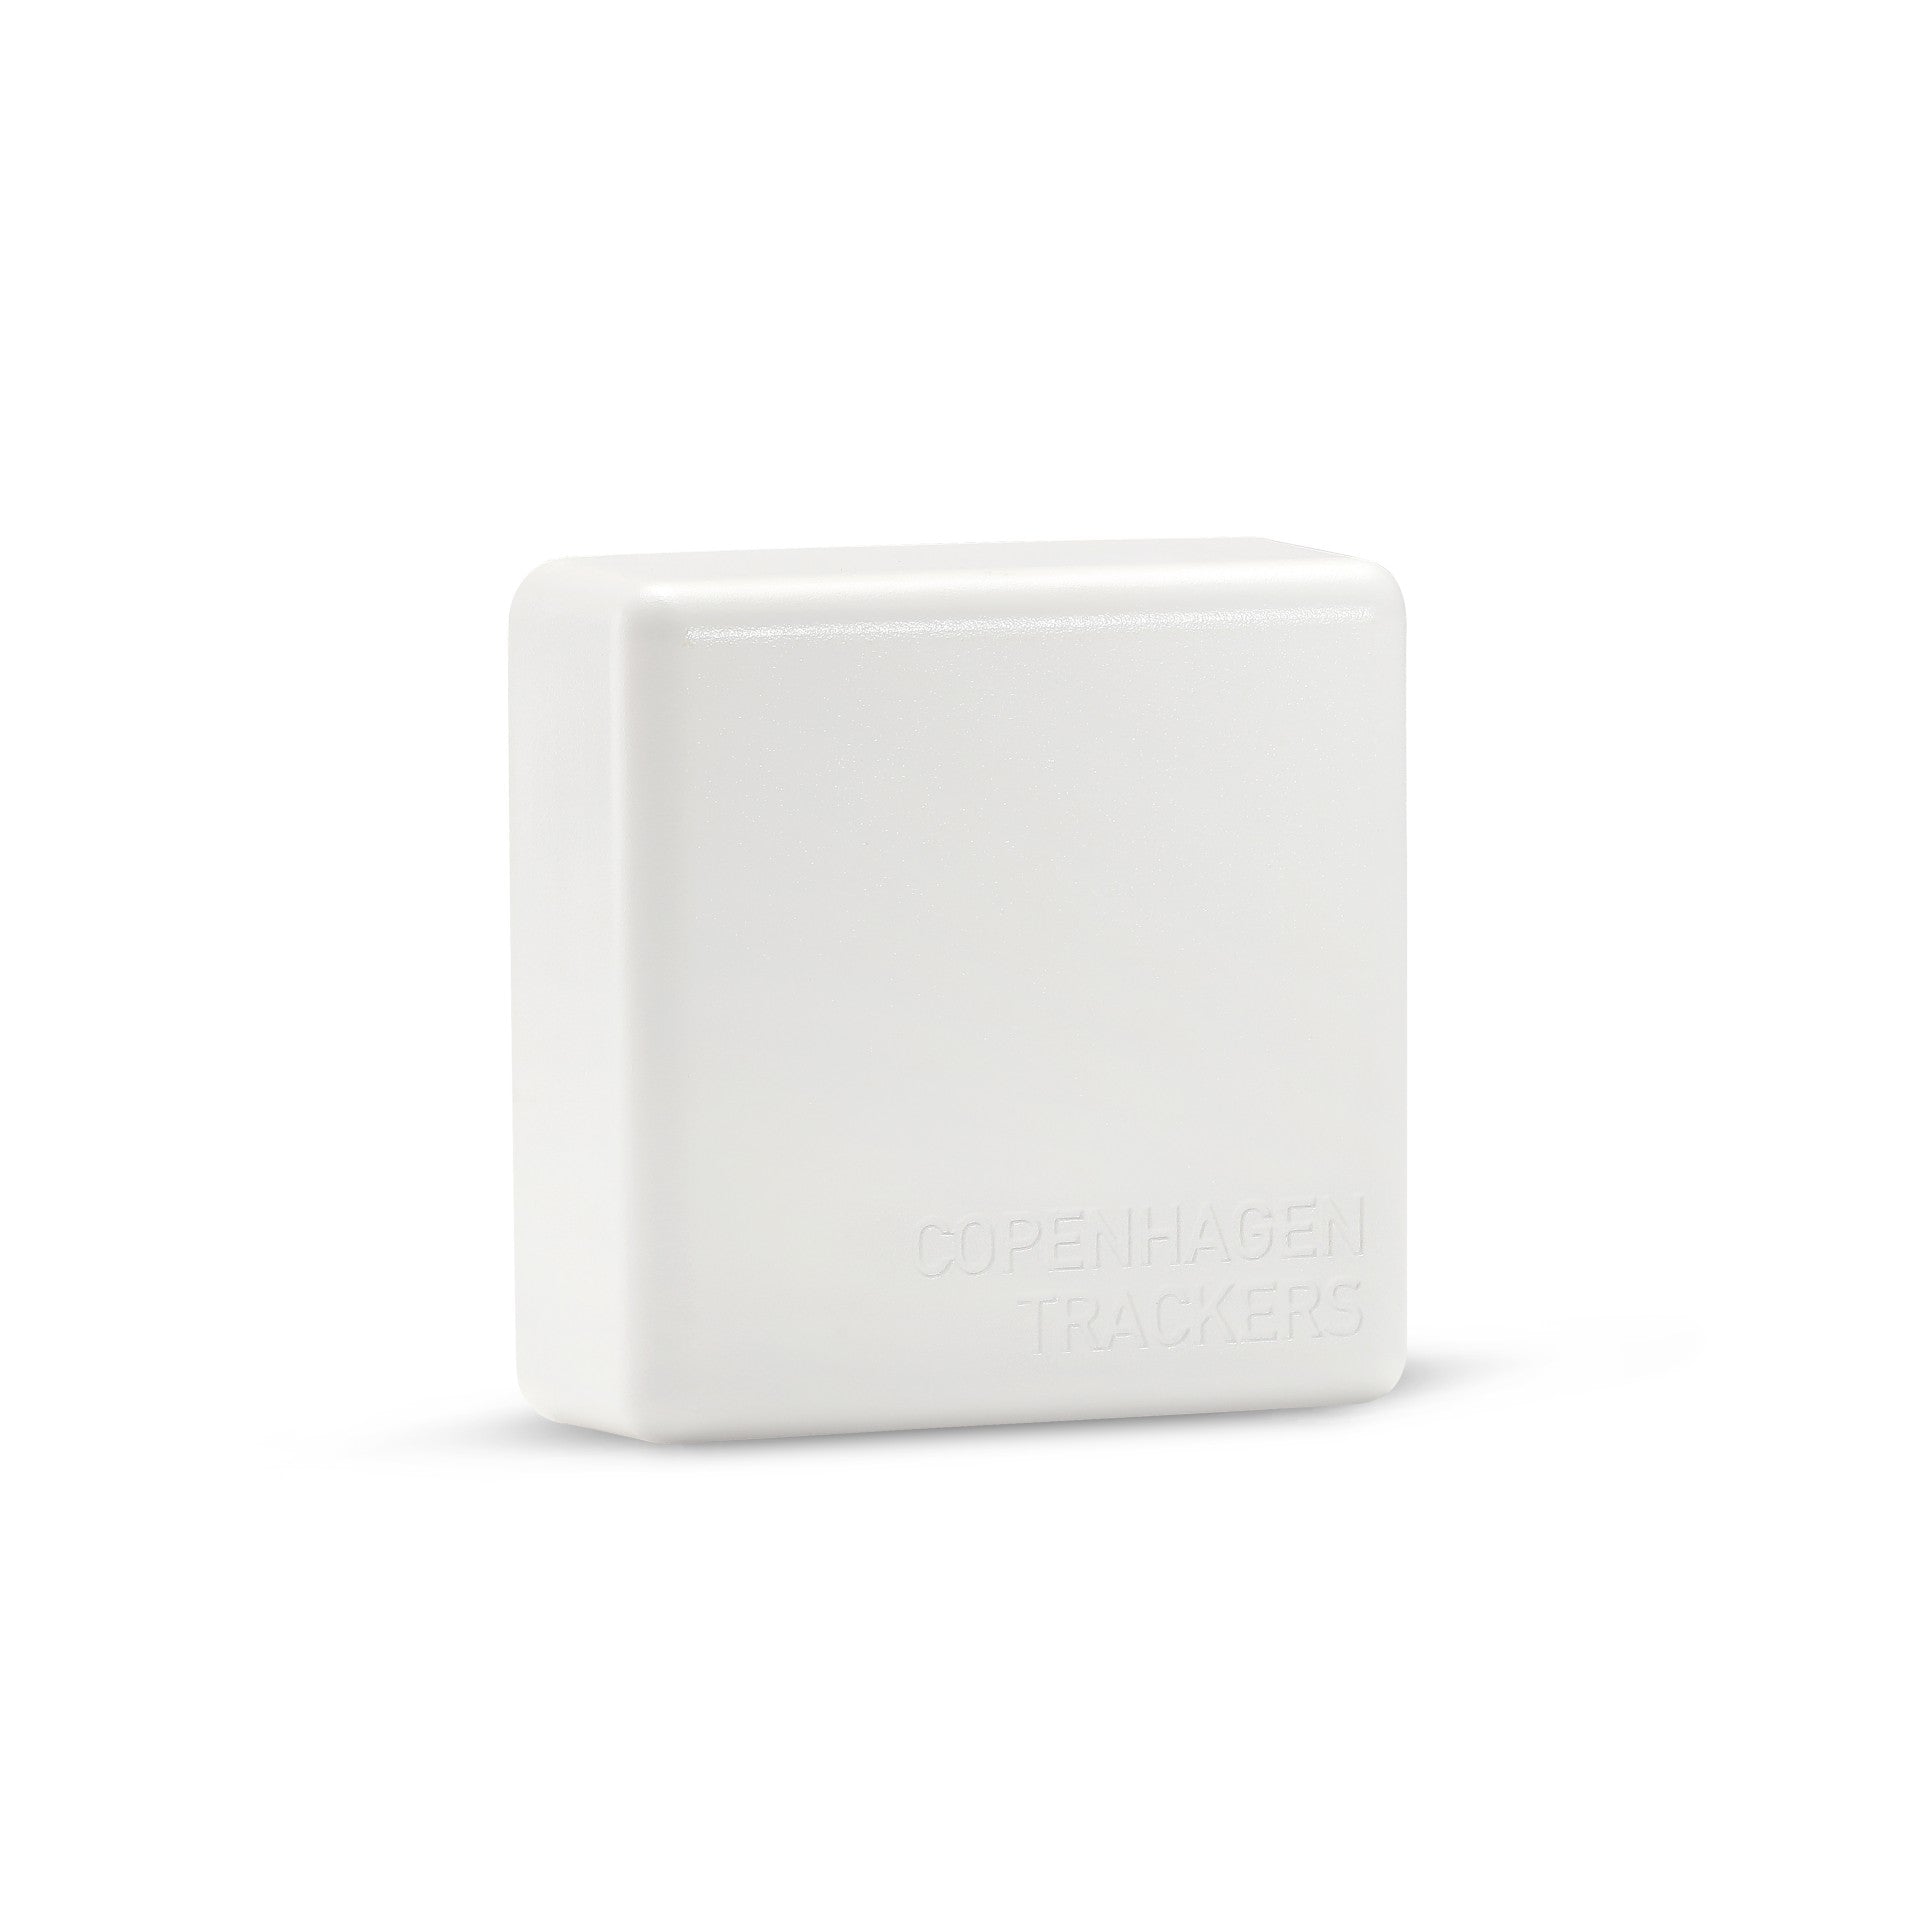 Cobblestone GPS Tracker (white)